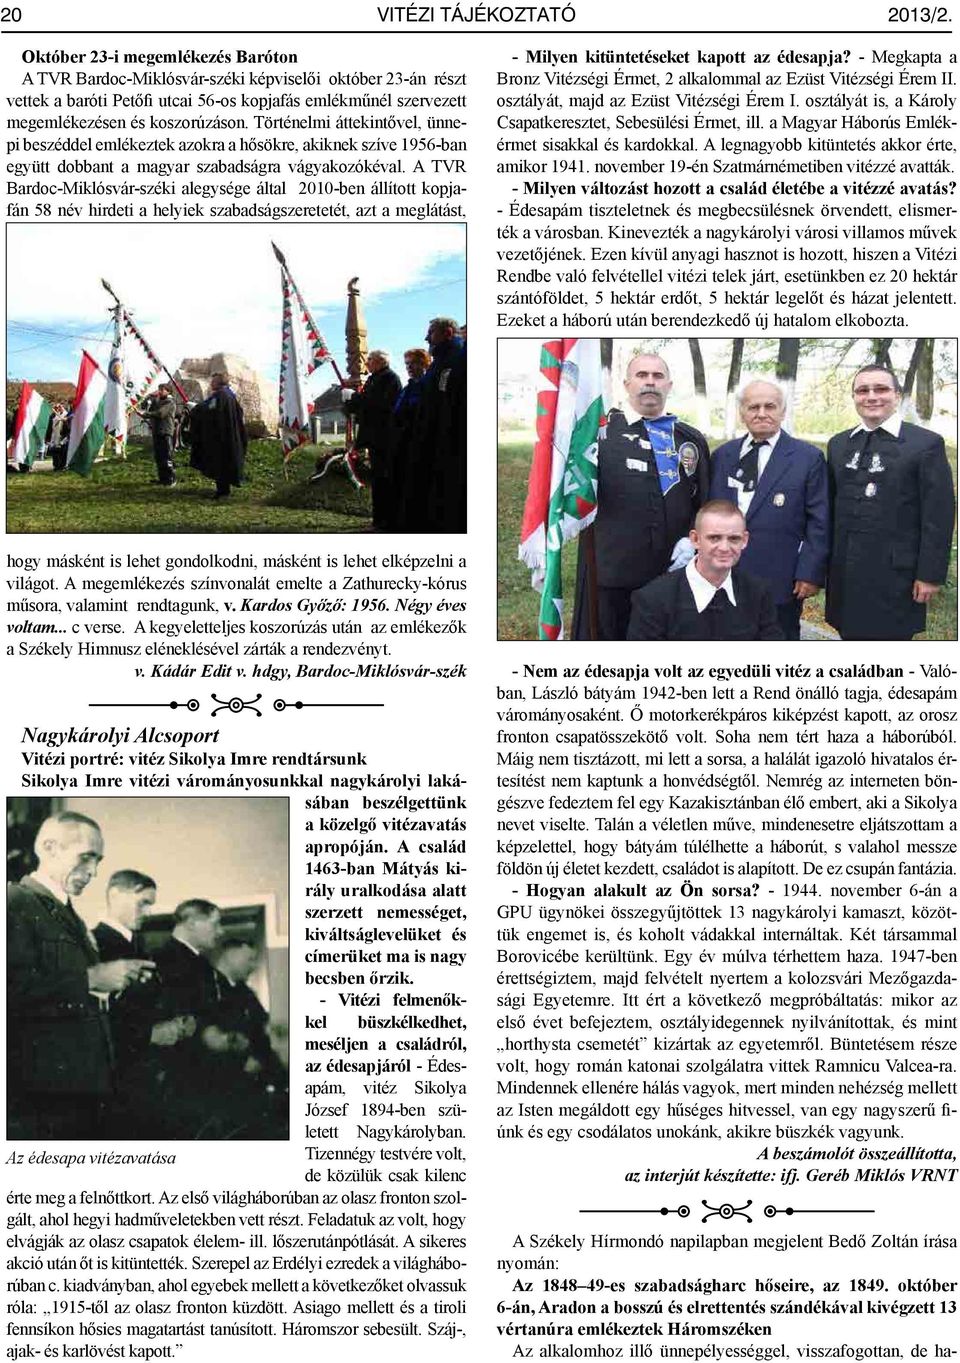 Történelmi áttekintővel, ünnepi beszéddel emlékeztek azokra a hősökre, akiknek szíve 1956-ban együtt dobbant a magyar szabadságra vágyakozókéval.